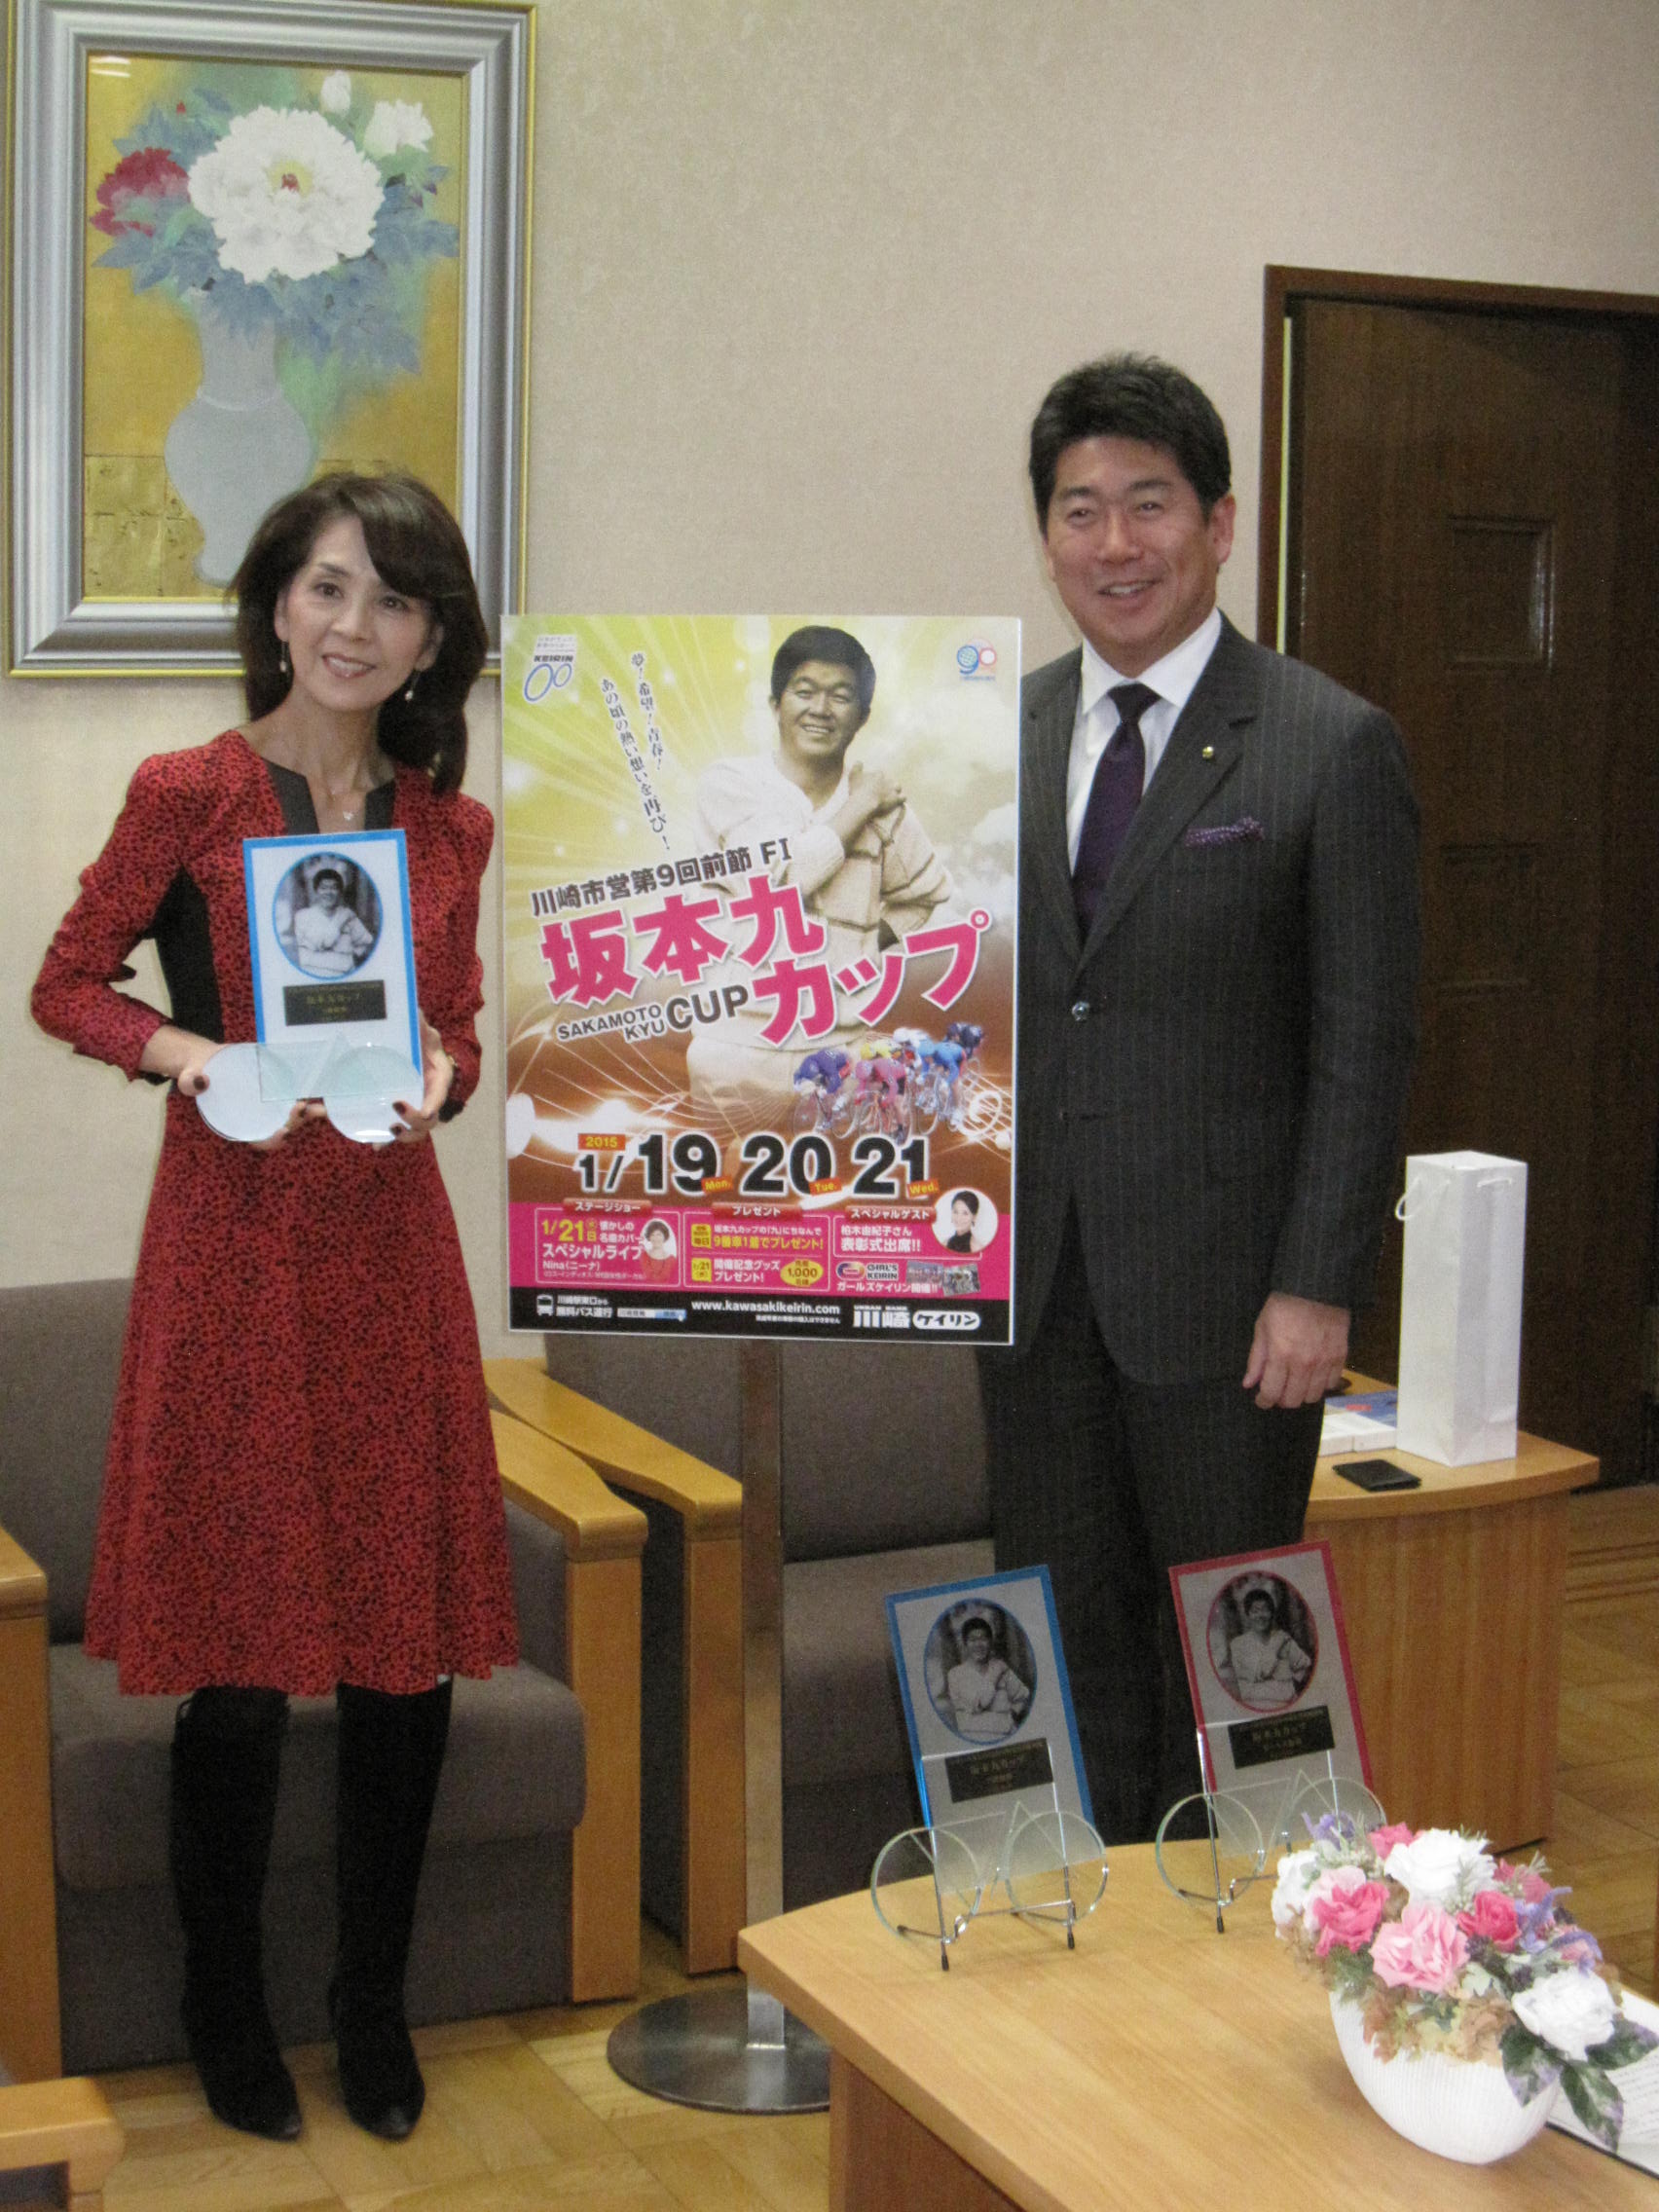 柏木由紀子さんと記念撮影する市長